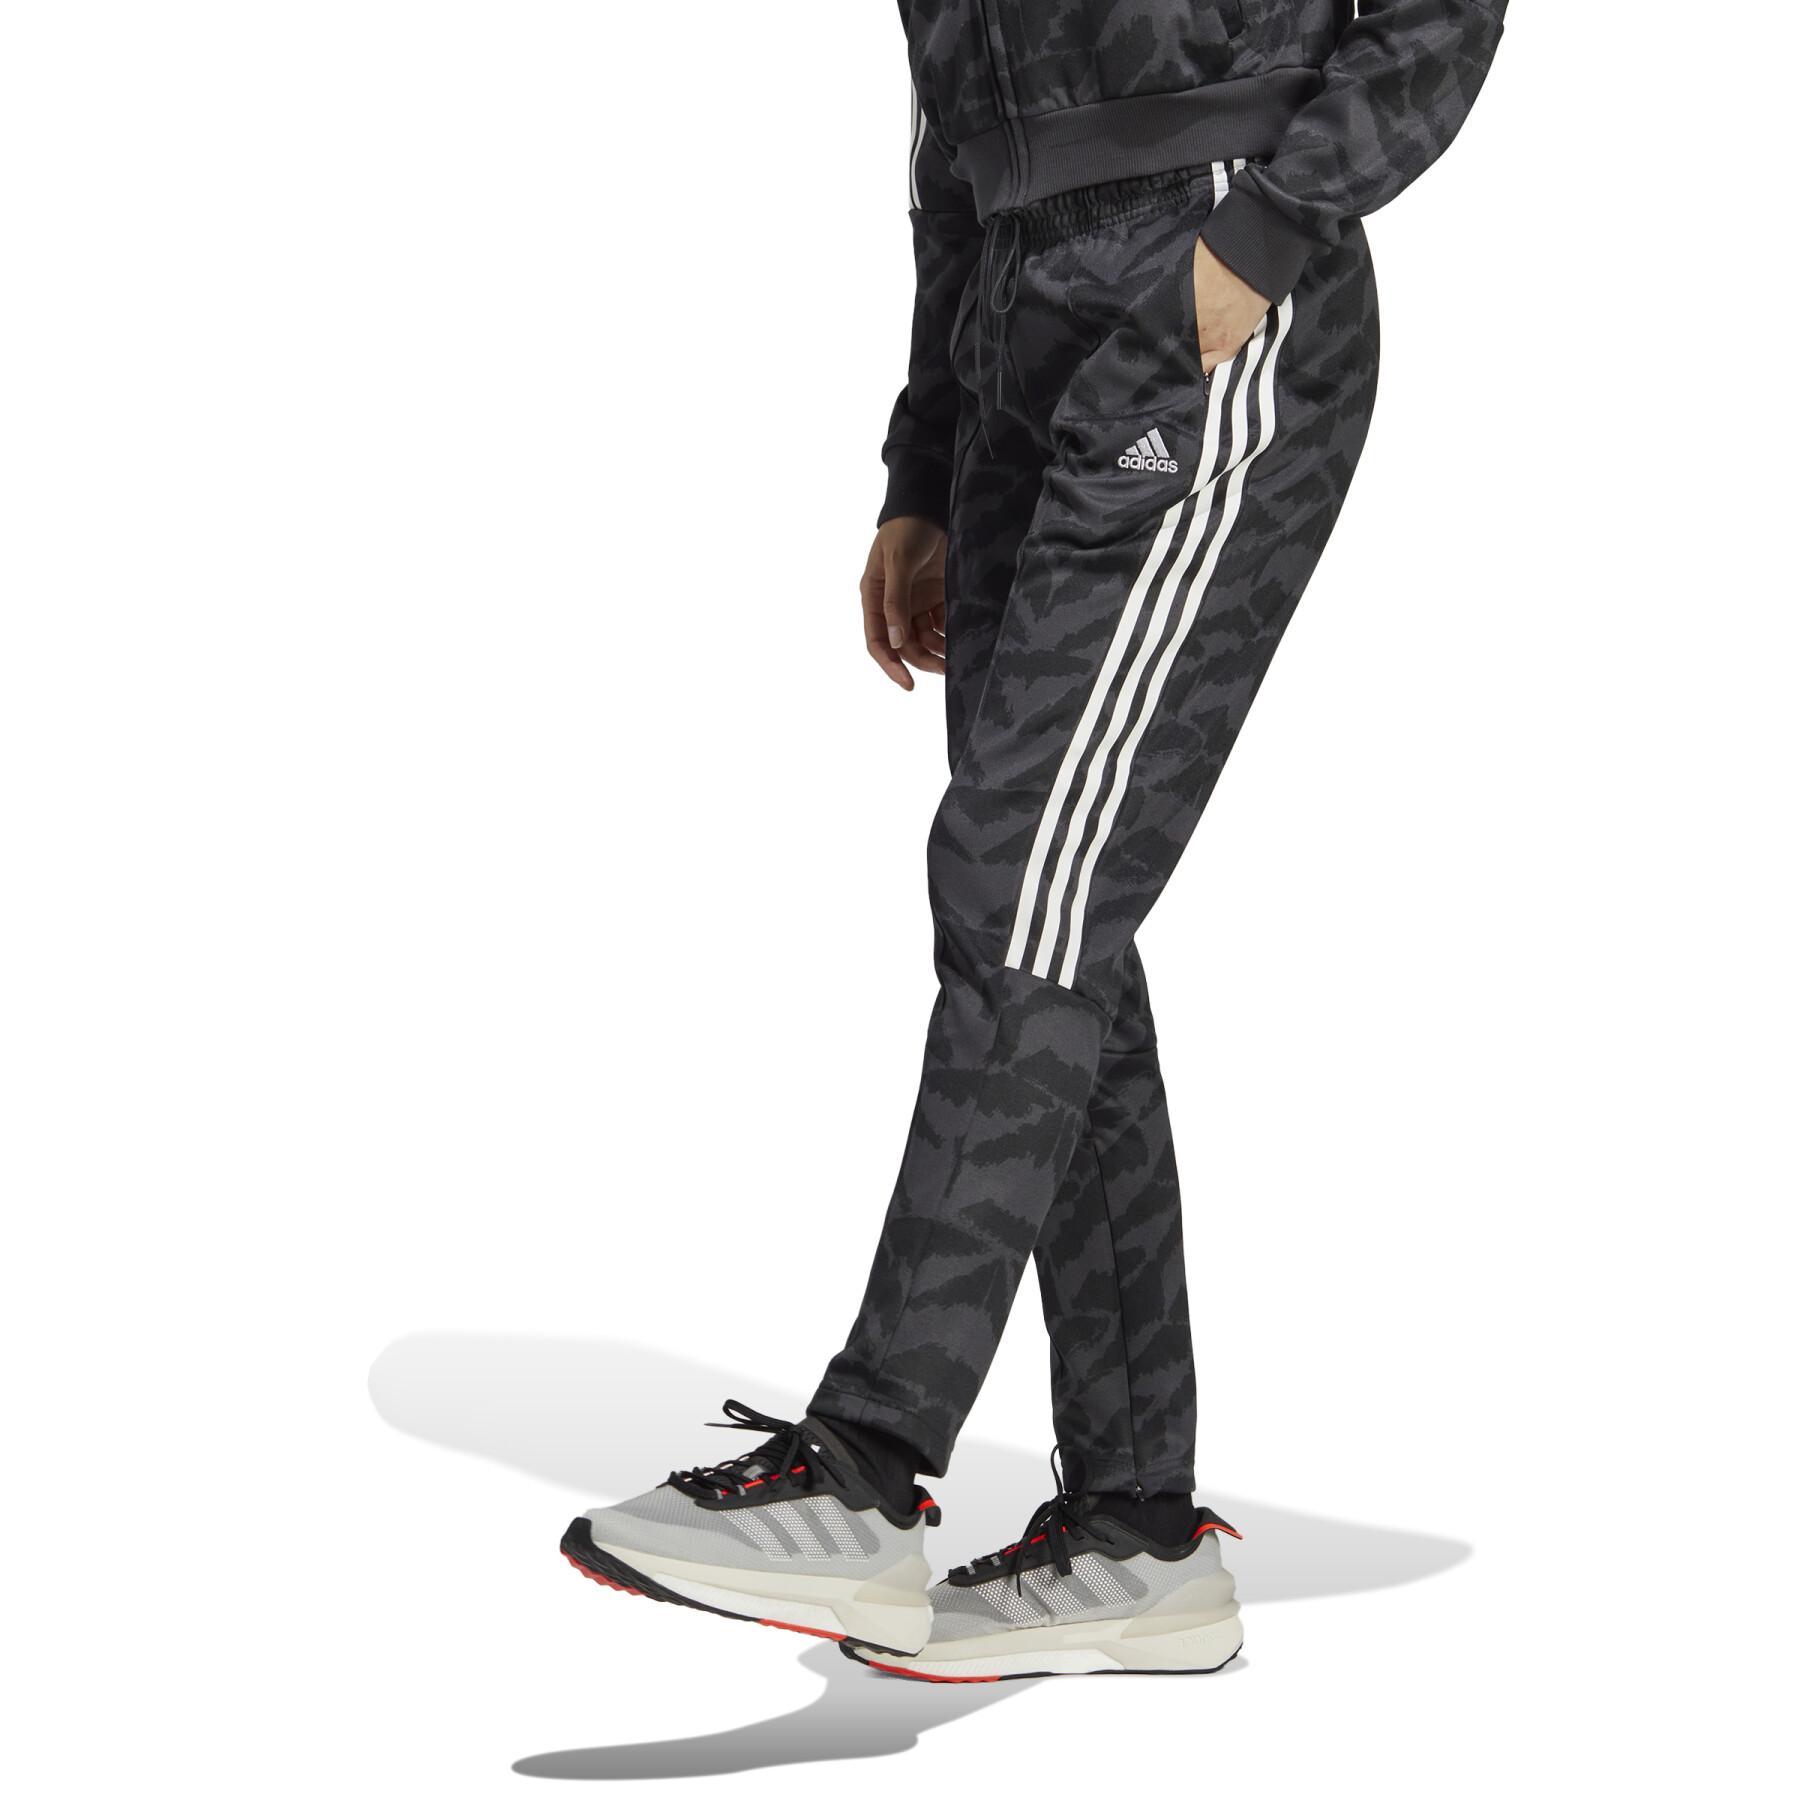 Pantalón de jogging adidas Suit-Up